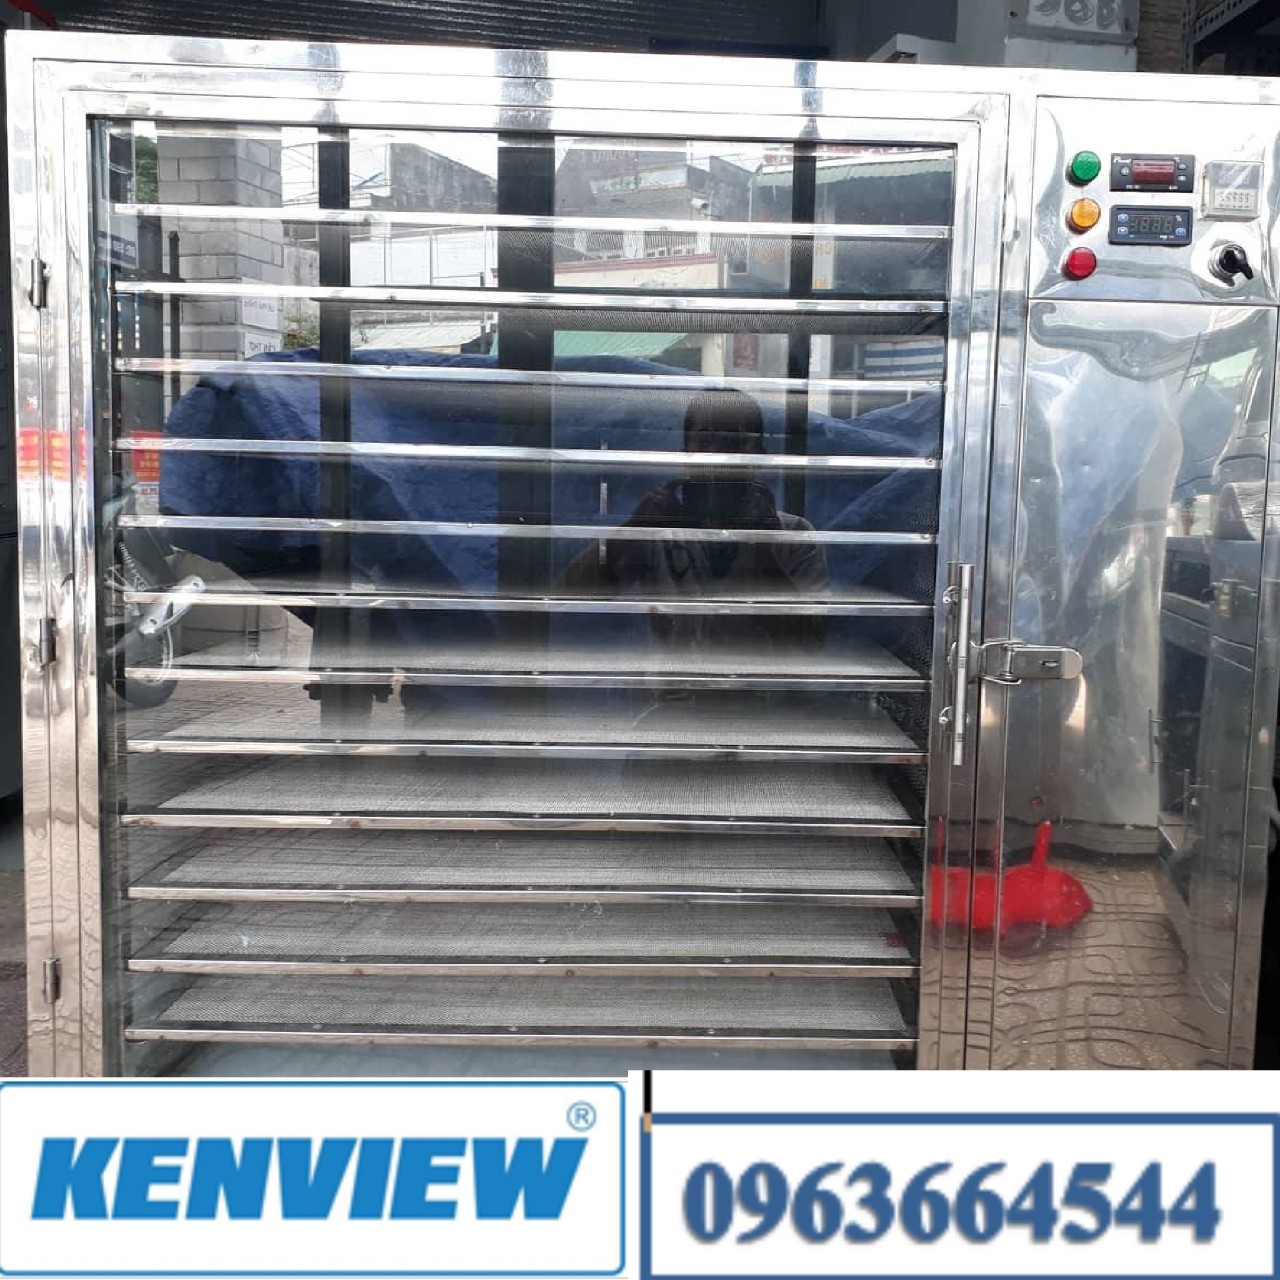 Kenview cung cấp máy sấy cá chạch ở Quảng Ninh – Máy sấy hải sản khô